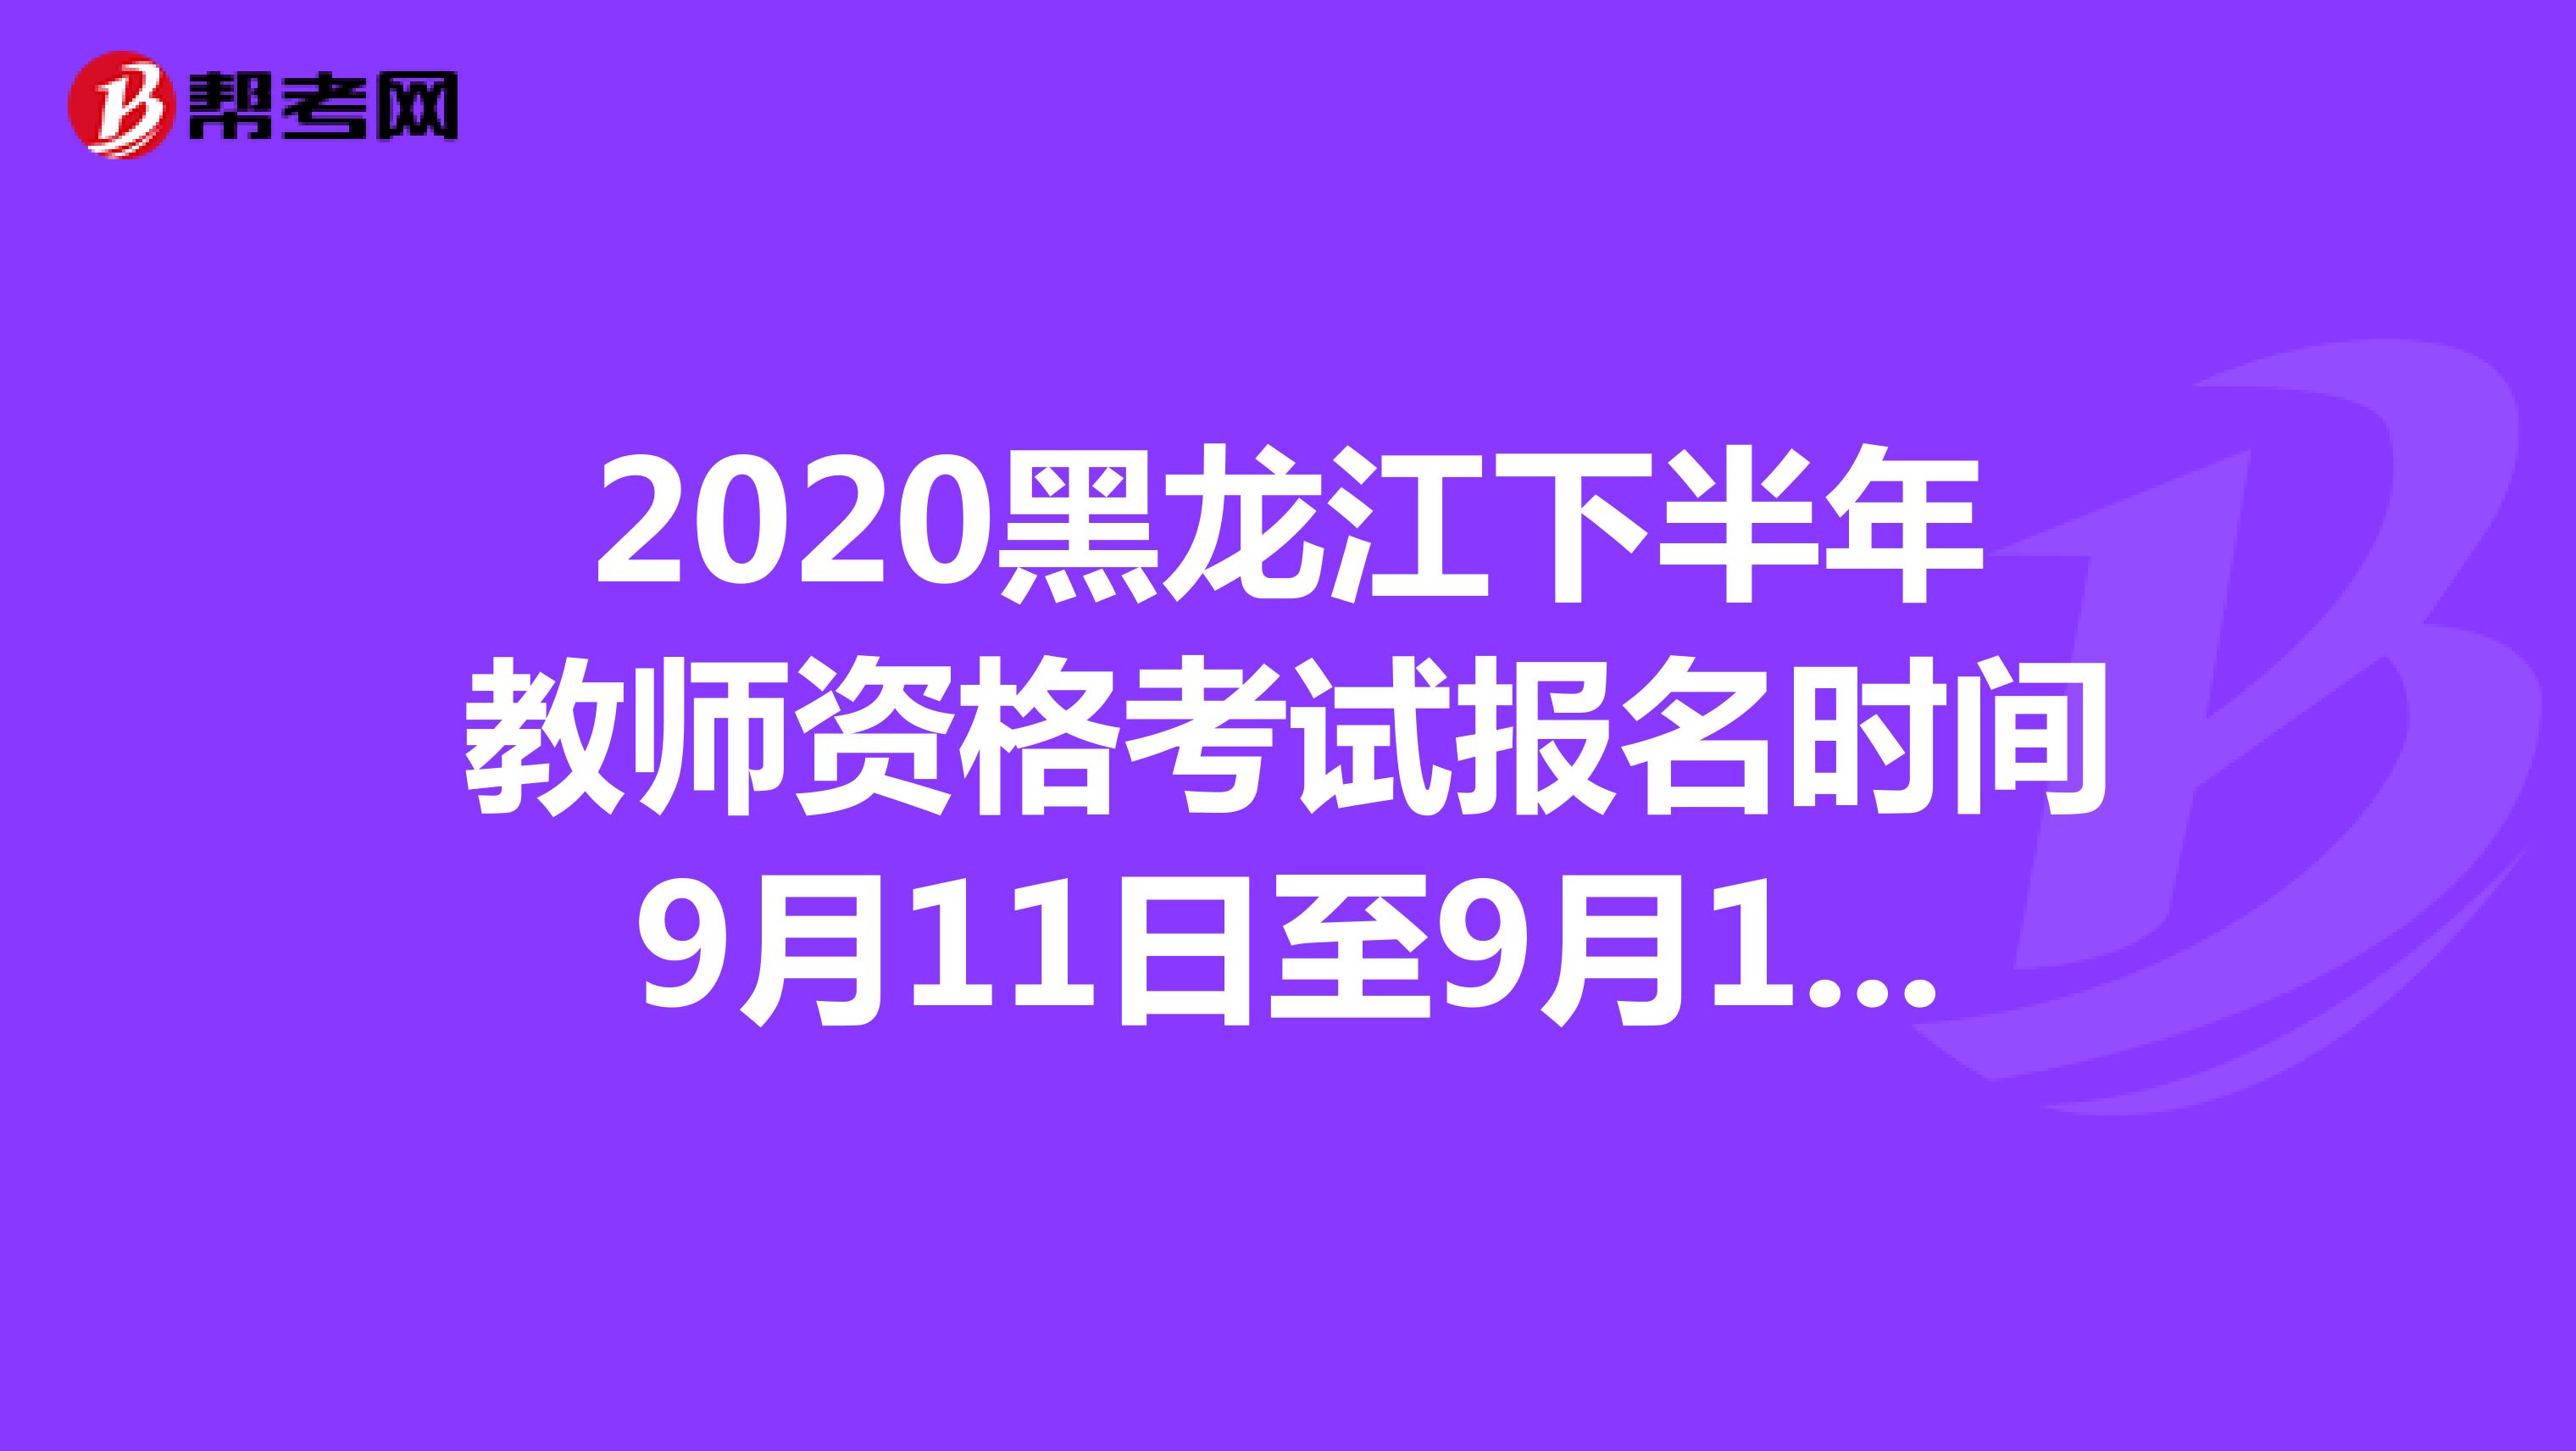 2020黑龙江下半年教师资格考试报名时间9月11日至9月14日